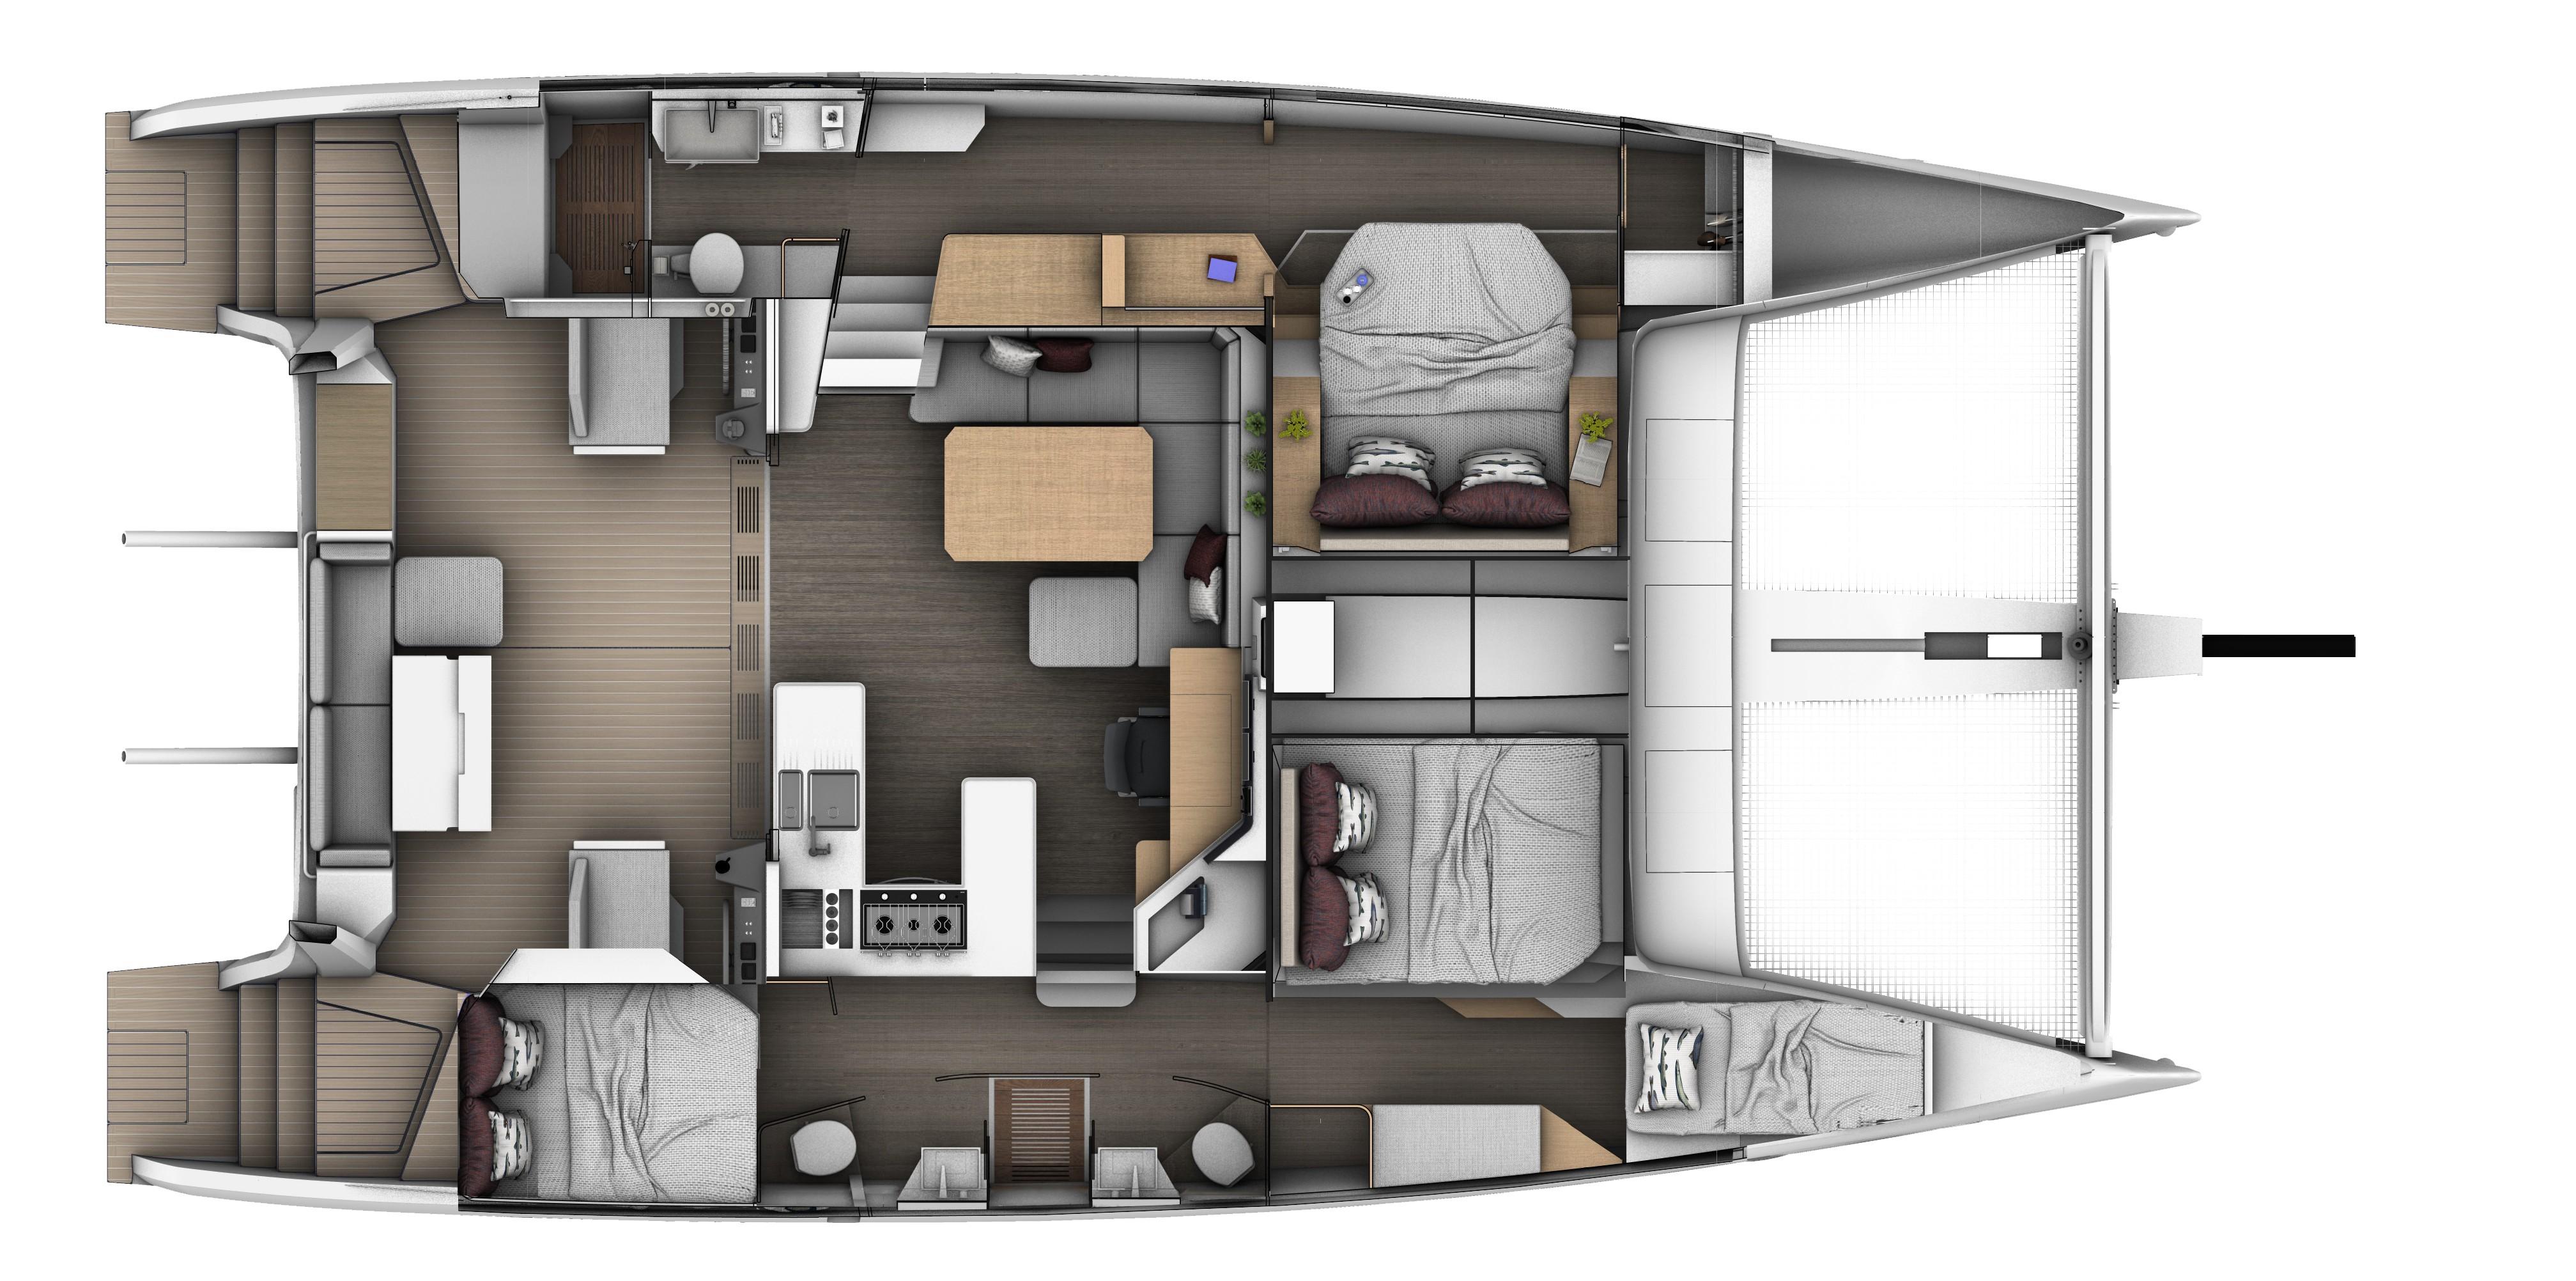 SEAWIND 1370 4 cabin 3 heads layout